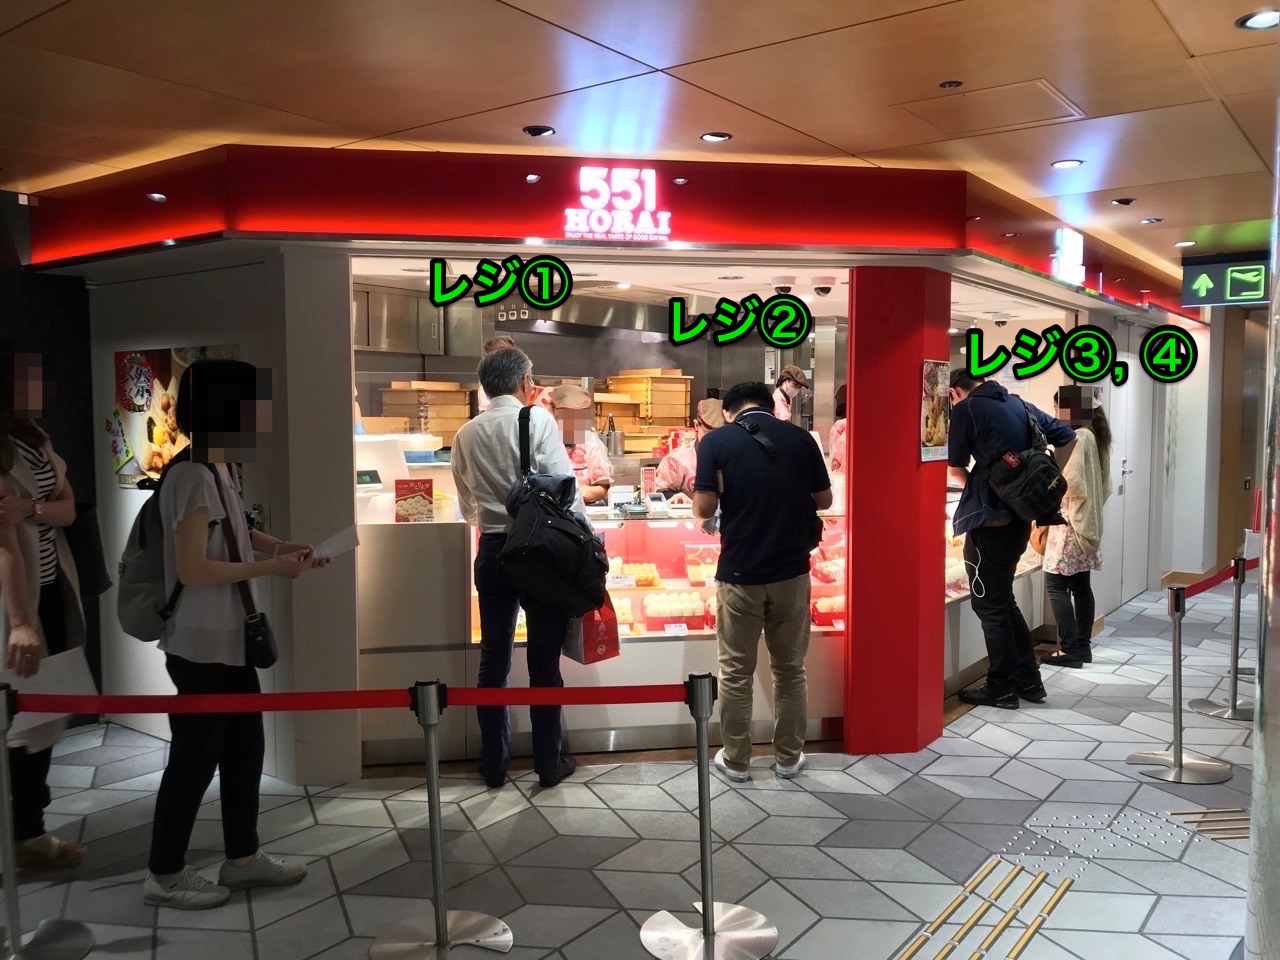 551蓬莱の激ウマ豚まんを大阪国際空港 伊丹 で購入する時の注意点 モノ好き ブログ